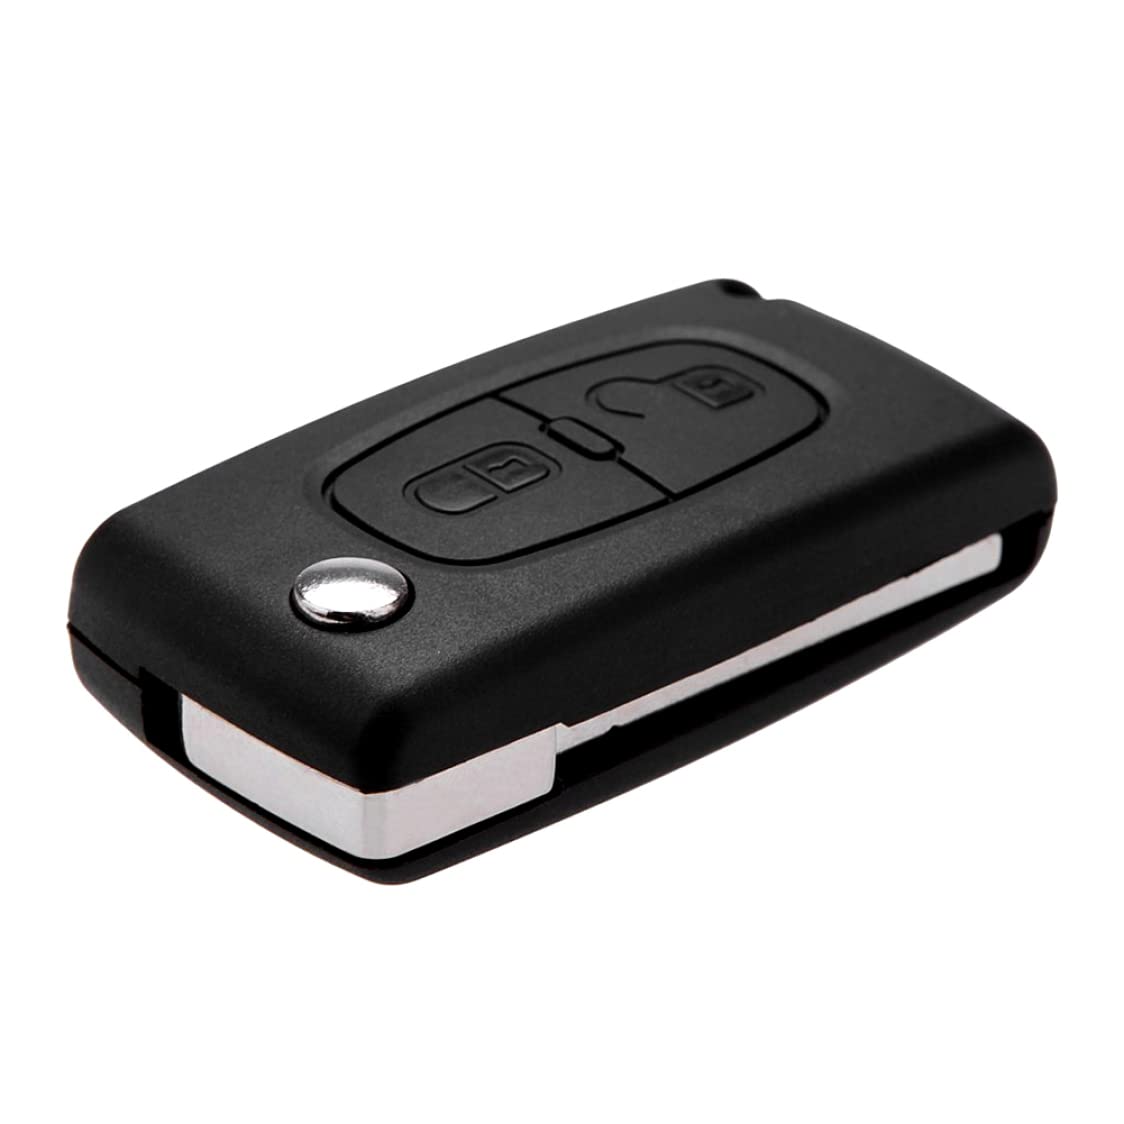 2 Knöpfe Autoschlüssel Flip Remote Folding Car Koffer Ersatzklapper Autotaste Abdeckung Kein Chip -kompatibel mit 207 307 308 CE0536, 2 Tasten Autoschlüssel von XJKLBYQ